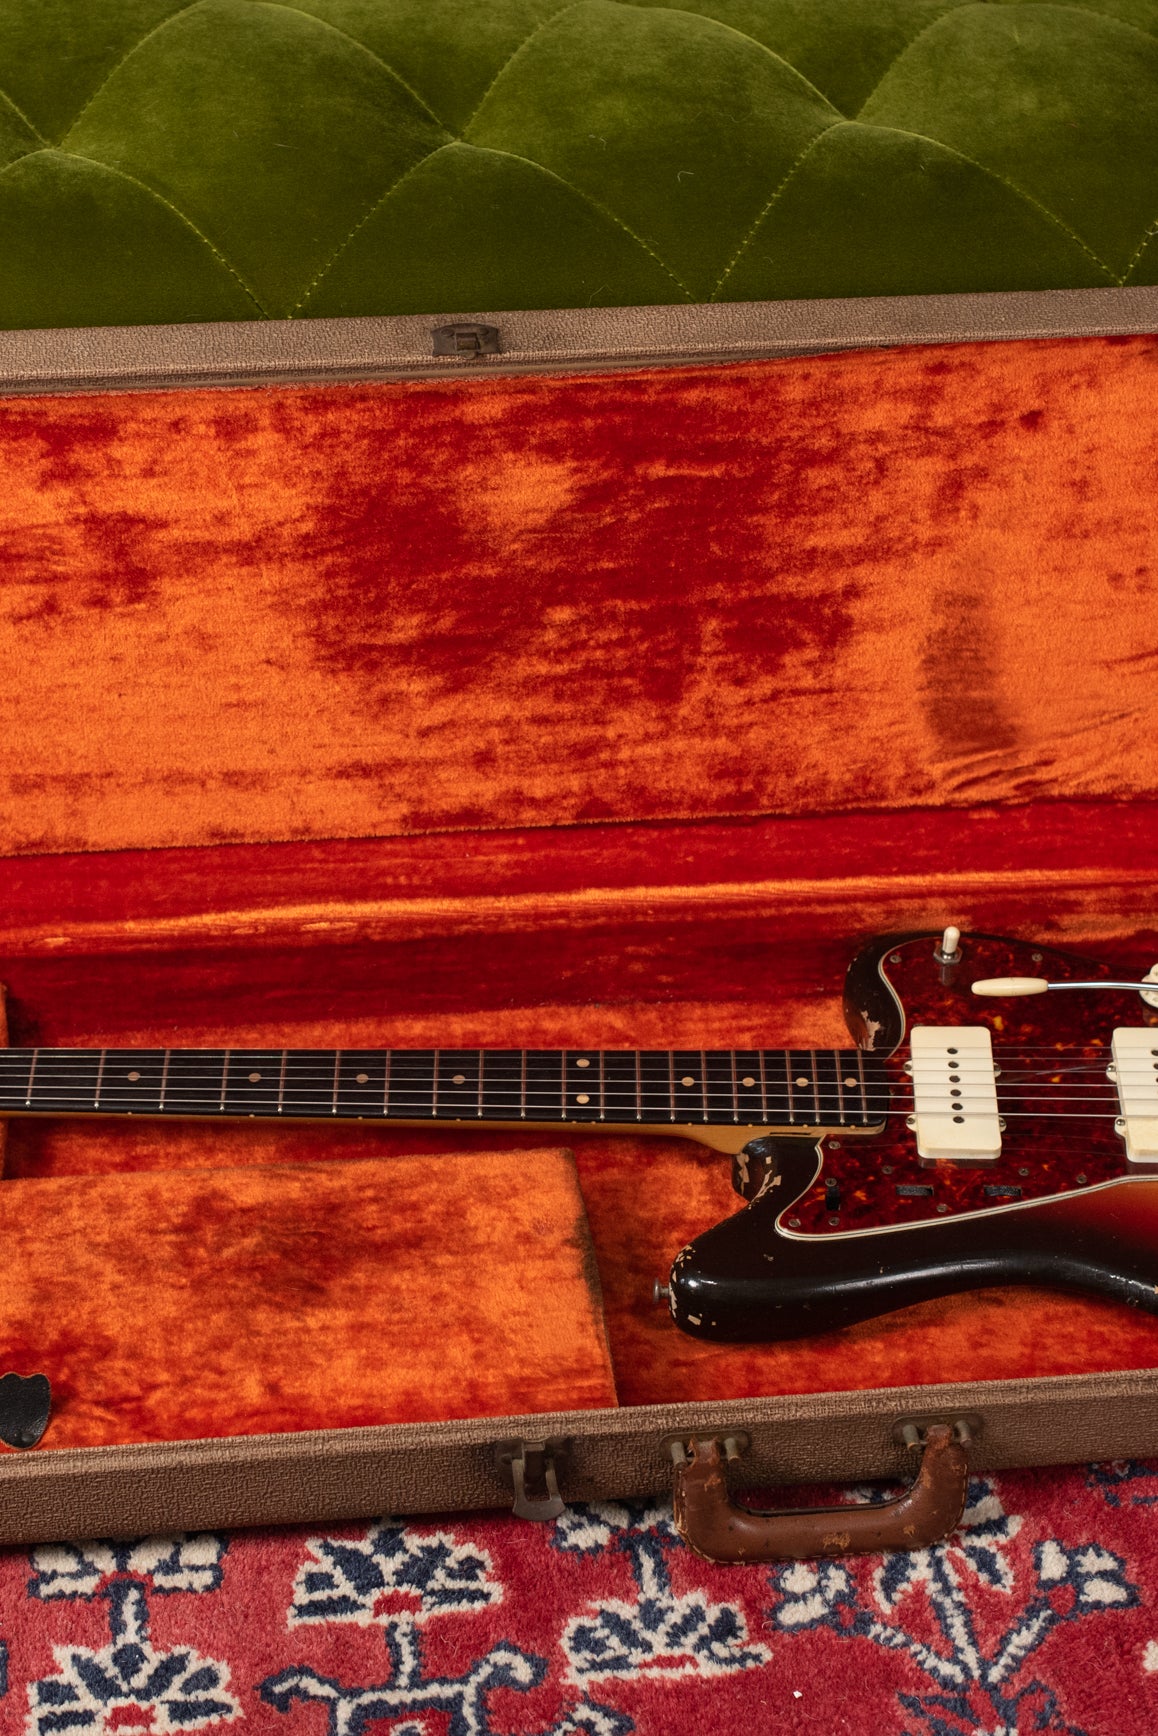 1962 Fender Jazzmaster original case